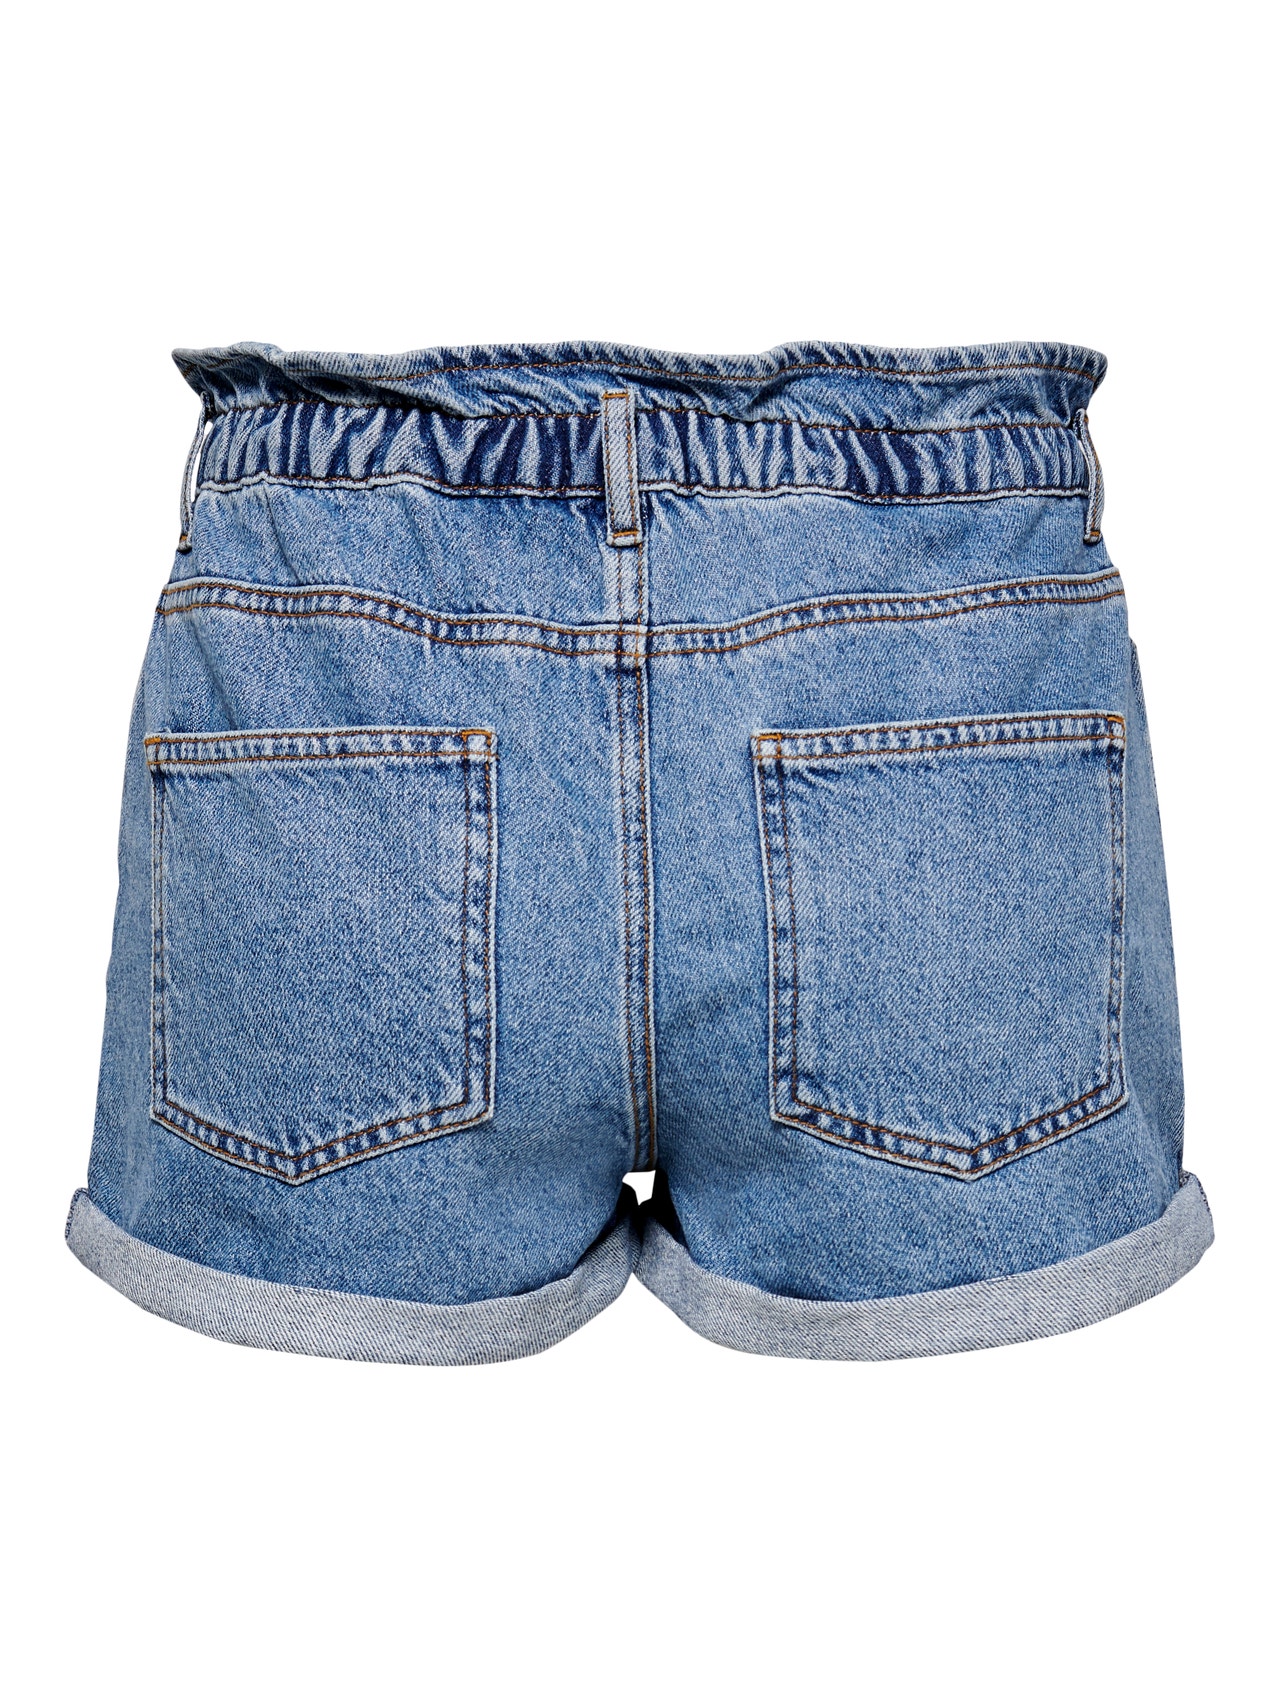 ONLY Relaxed Fit High waist Fold-up hems Shorts -Medium Blue Denim - 15200196